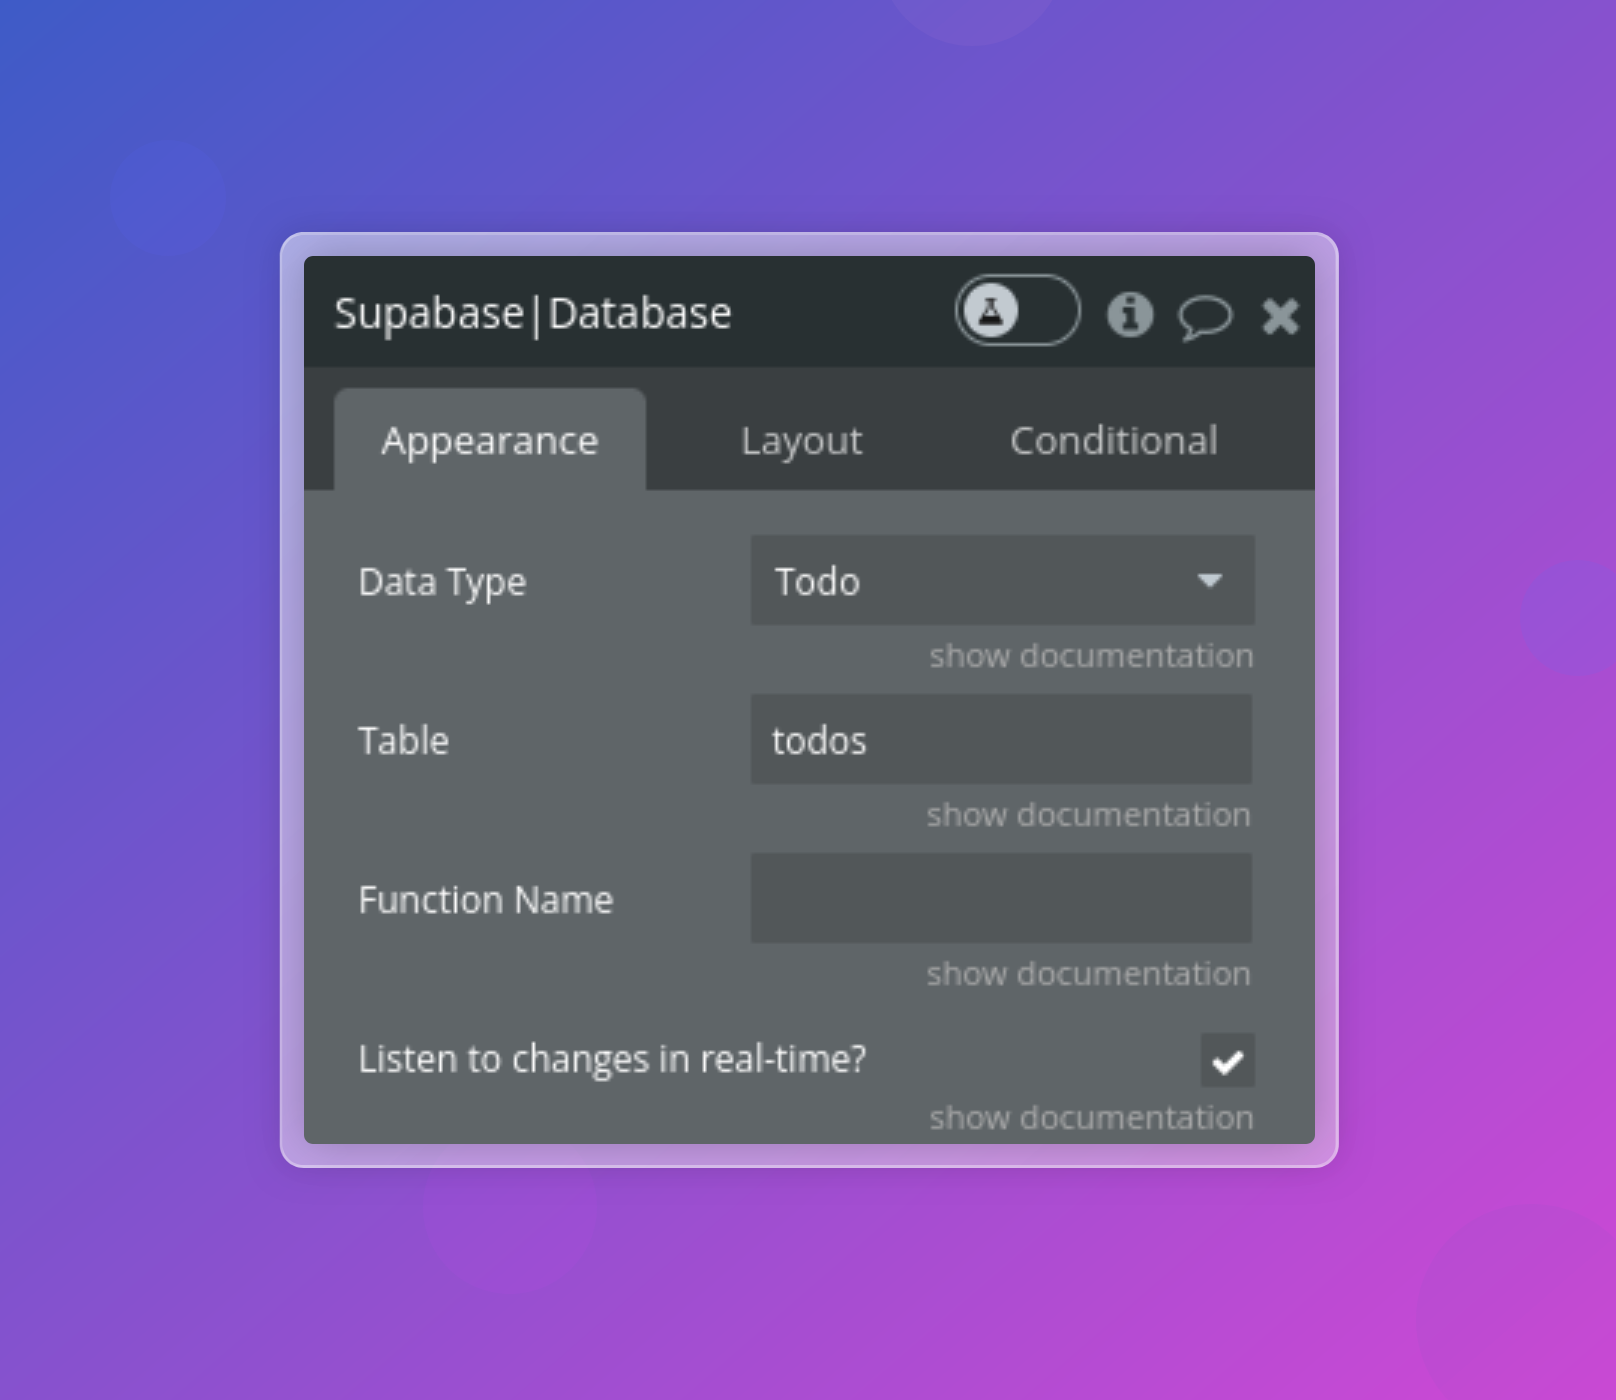 Supabase - Database settings